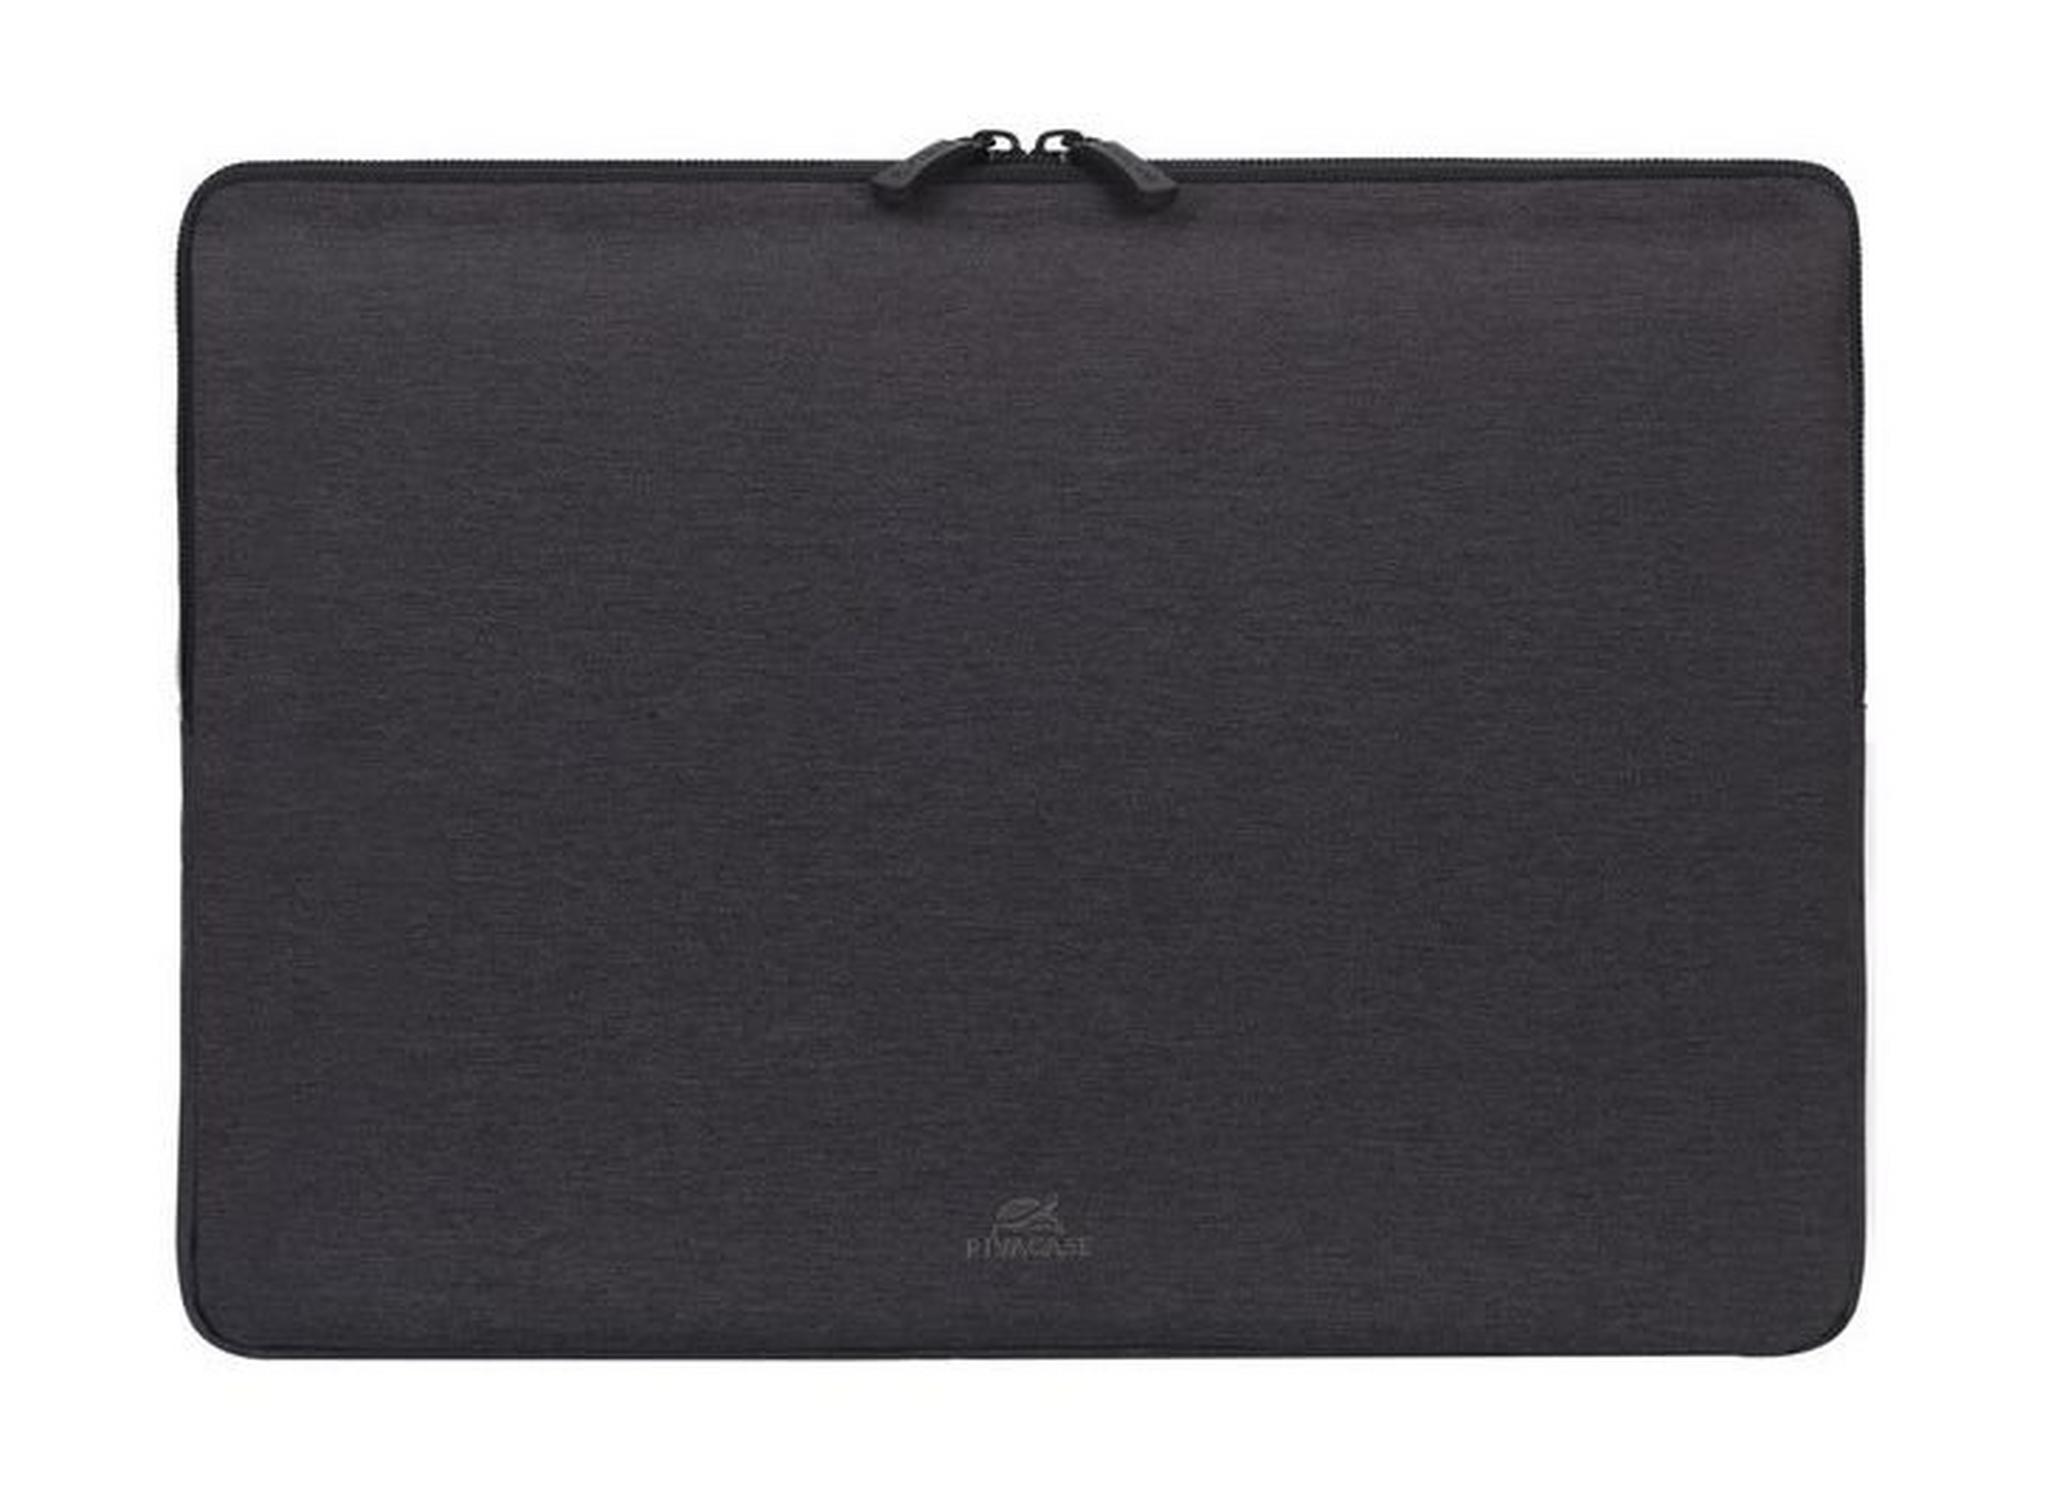 حقيبة ريفا للابتوب بحجم ١٣,٣ بوصة – أسود (7703)